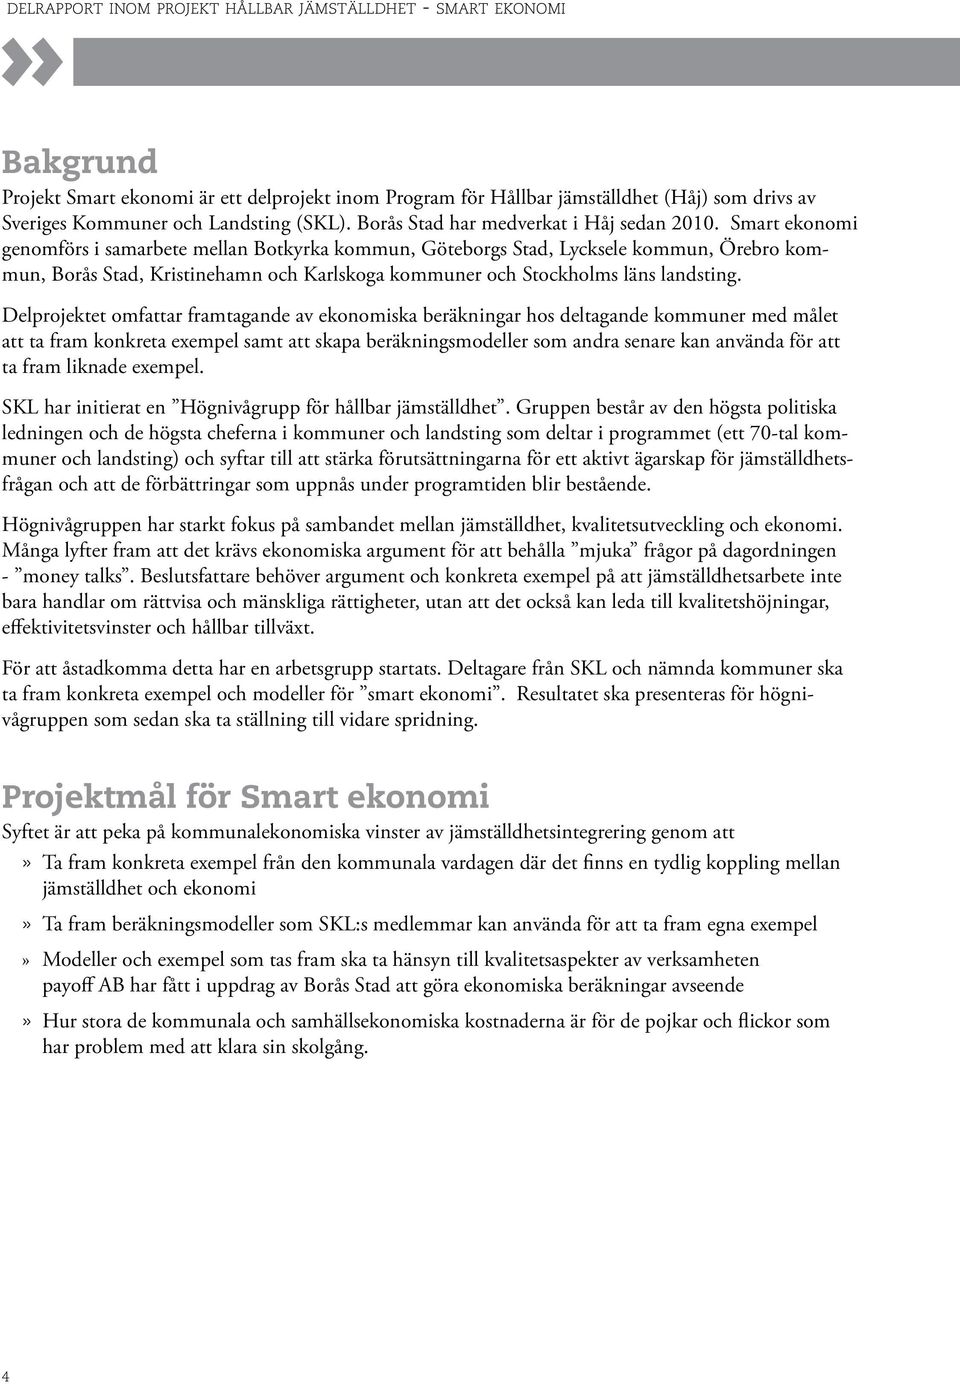 Smart ekonomi genomförs i samarbete mellan Botkyrka kommun, Göteborgs Stad, Lycksele kommun, Örebro kommun, Borås Stad, Kristinehamn och Karlskoga kommuner och Stockholms läns landsting.